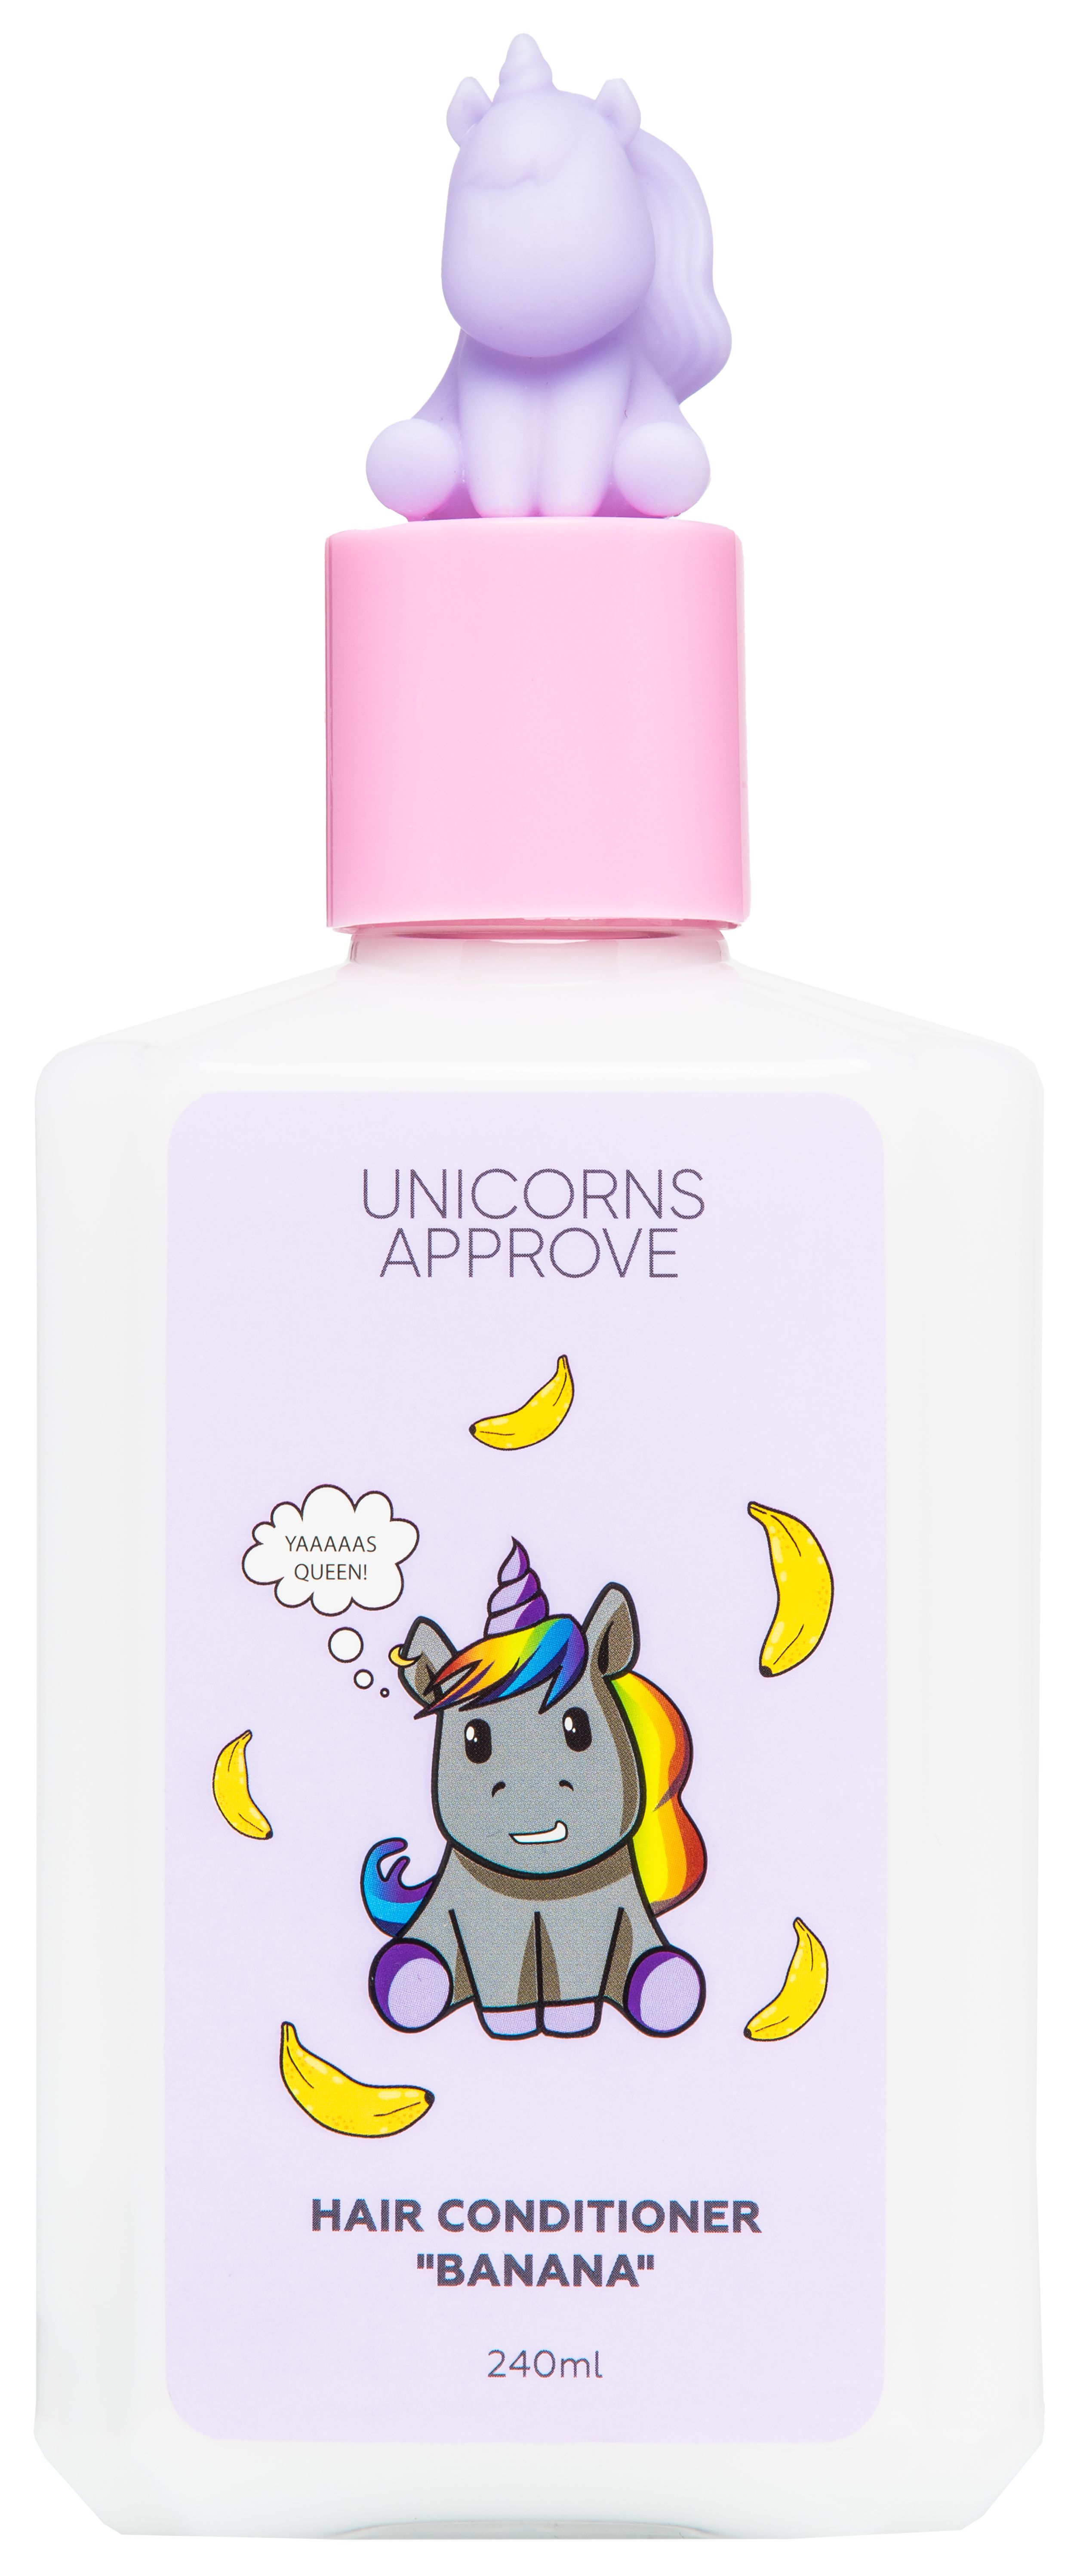 Unicorns approve гель для душа. Unicorns approve кондиционер. Unicorns approve косметика для детей. Unicorns approve духи. Unicorns approve пена для ванны.